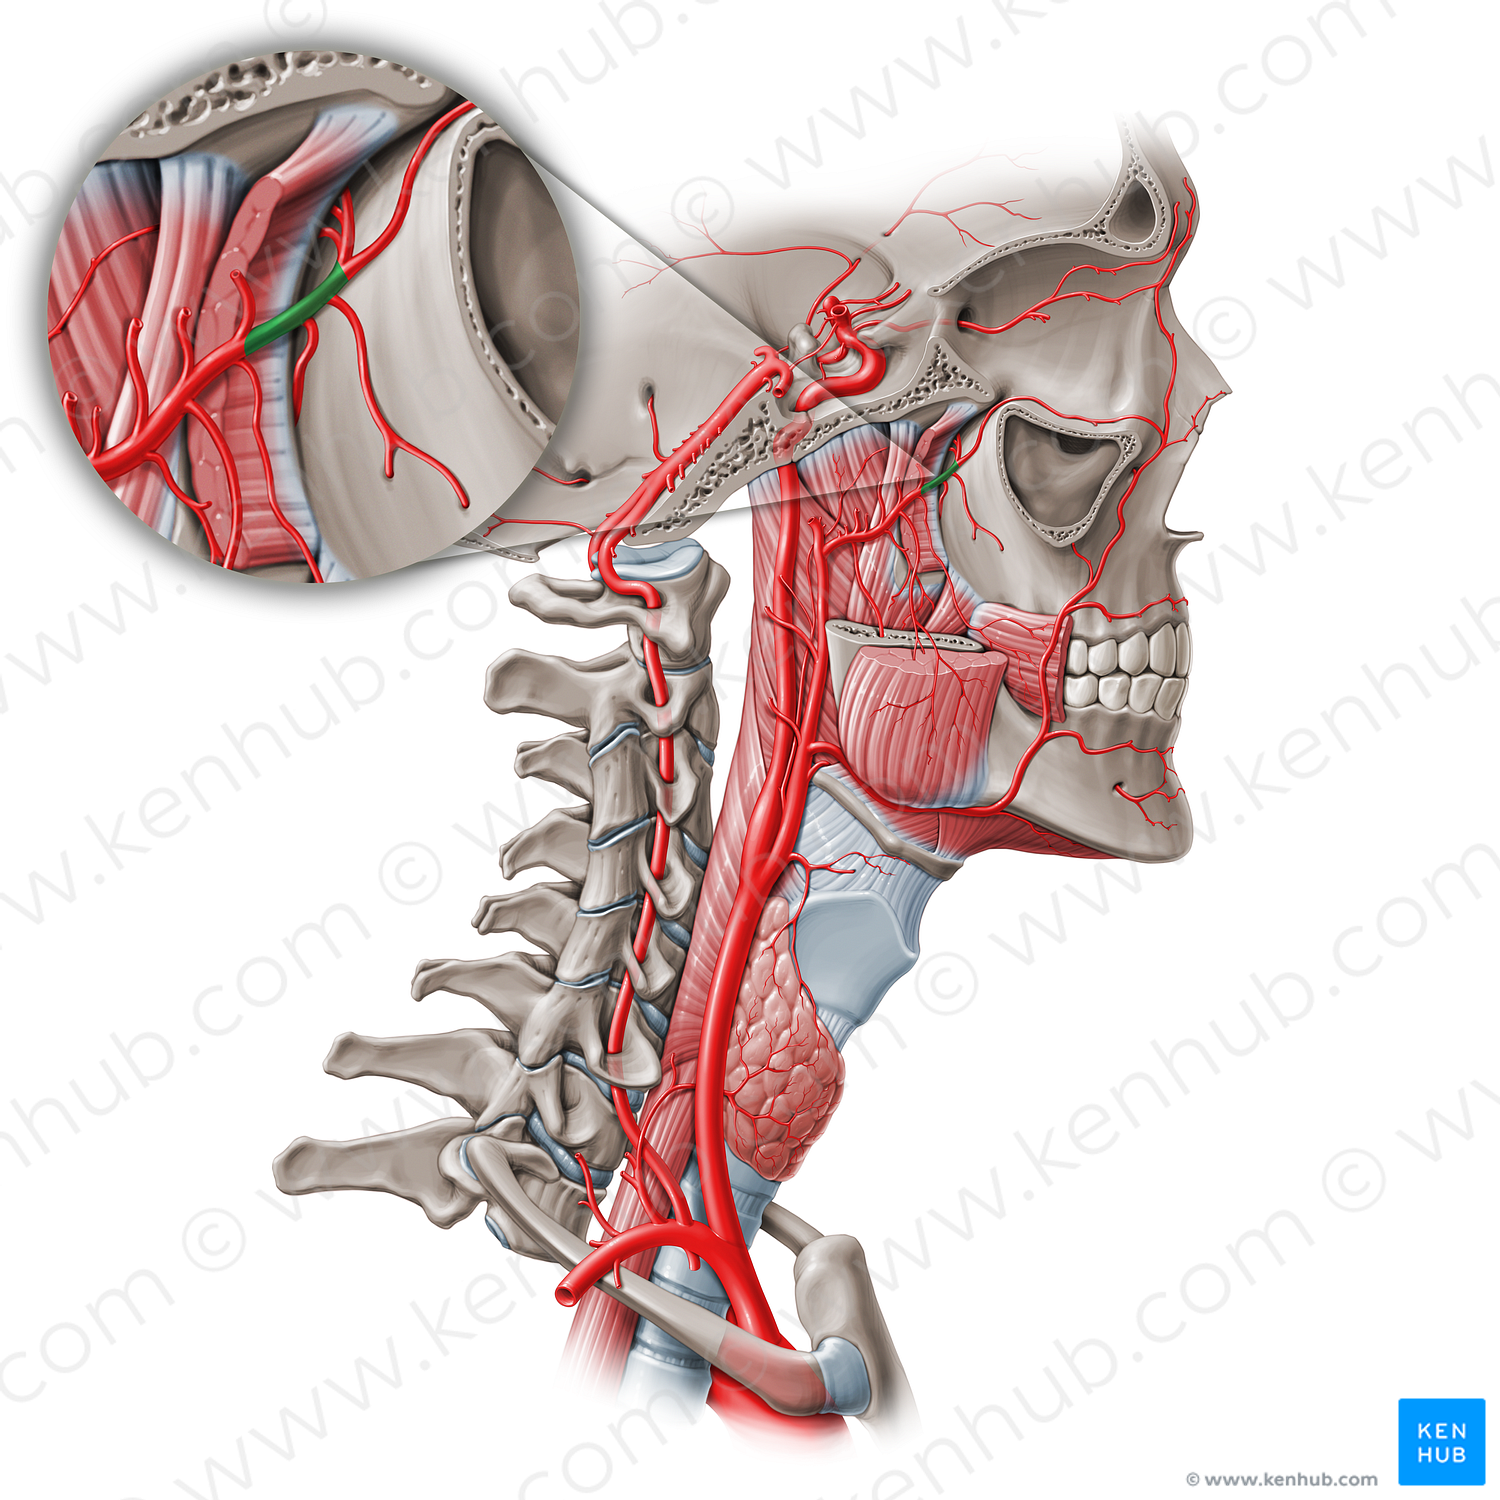 Pterygopalatine part of maxillary artery (#19079)